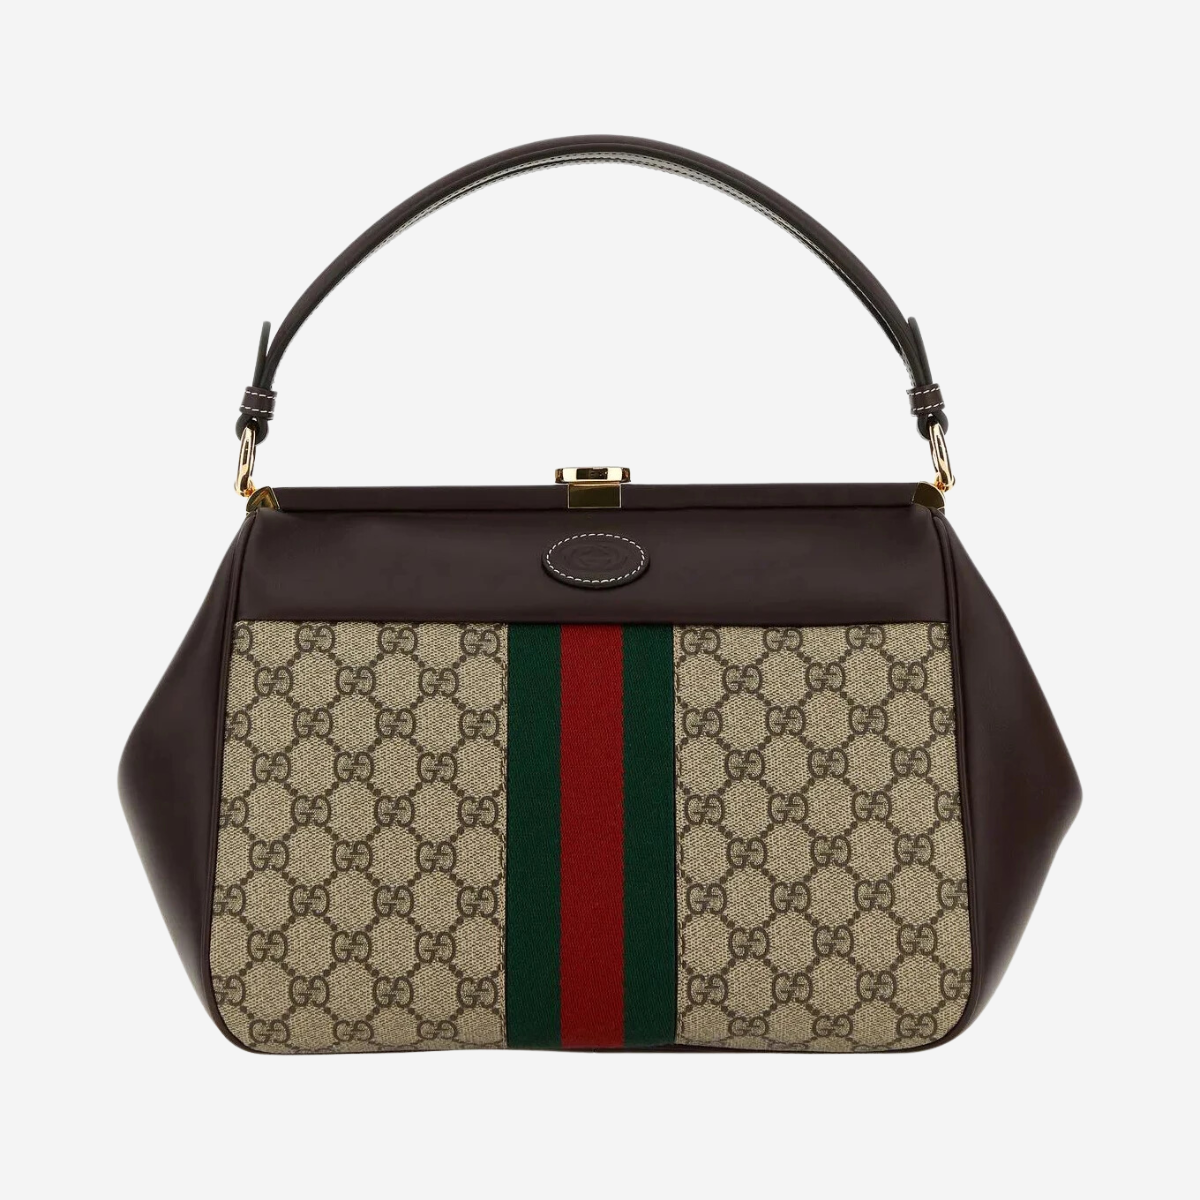 Gucci Gg Supreme Fabric And Leather Handbag